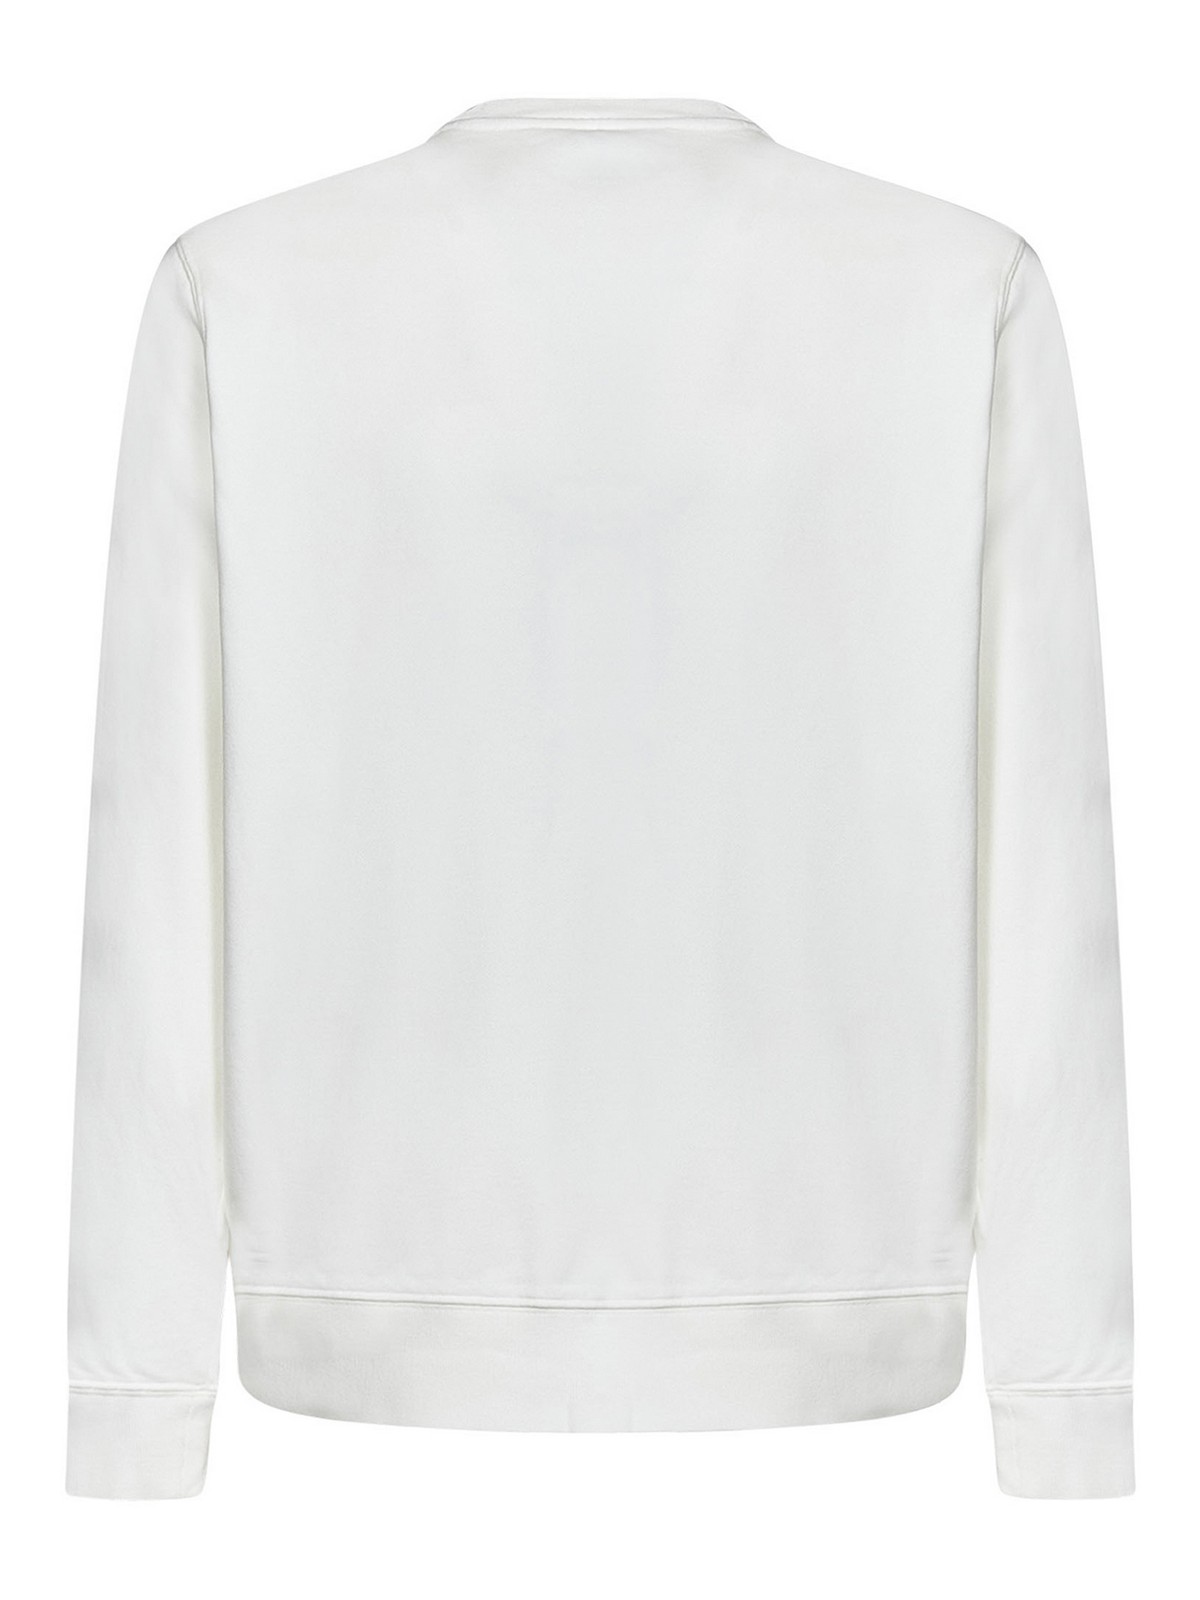 Shop Autry White Sweatshirt